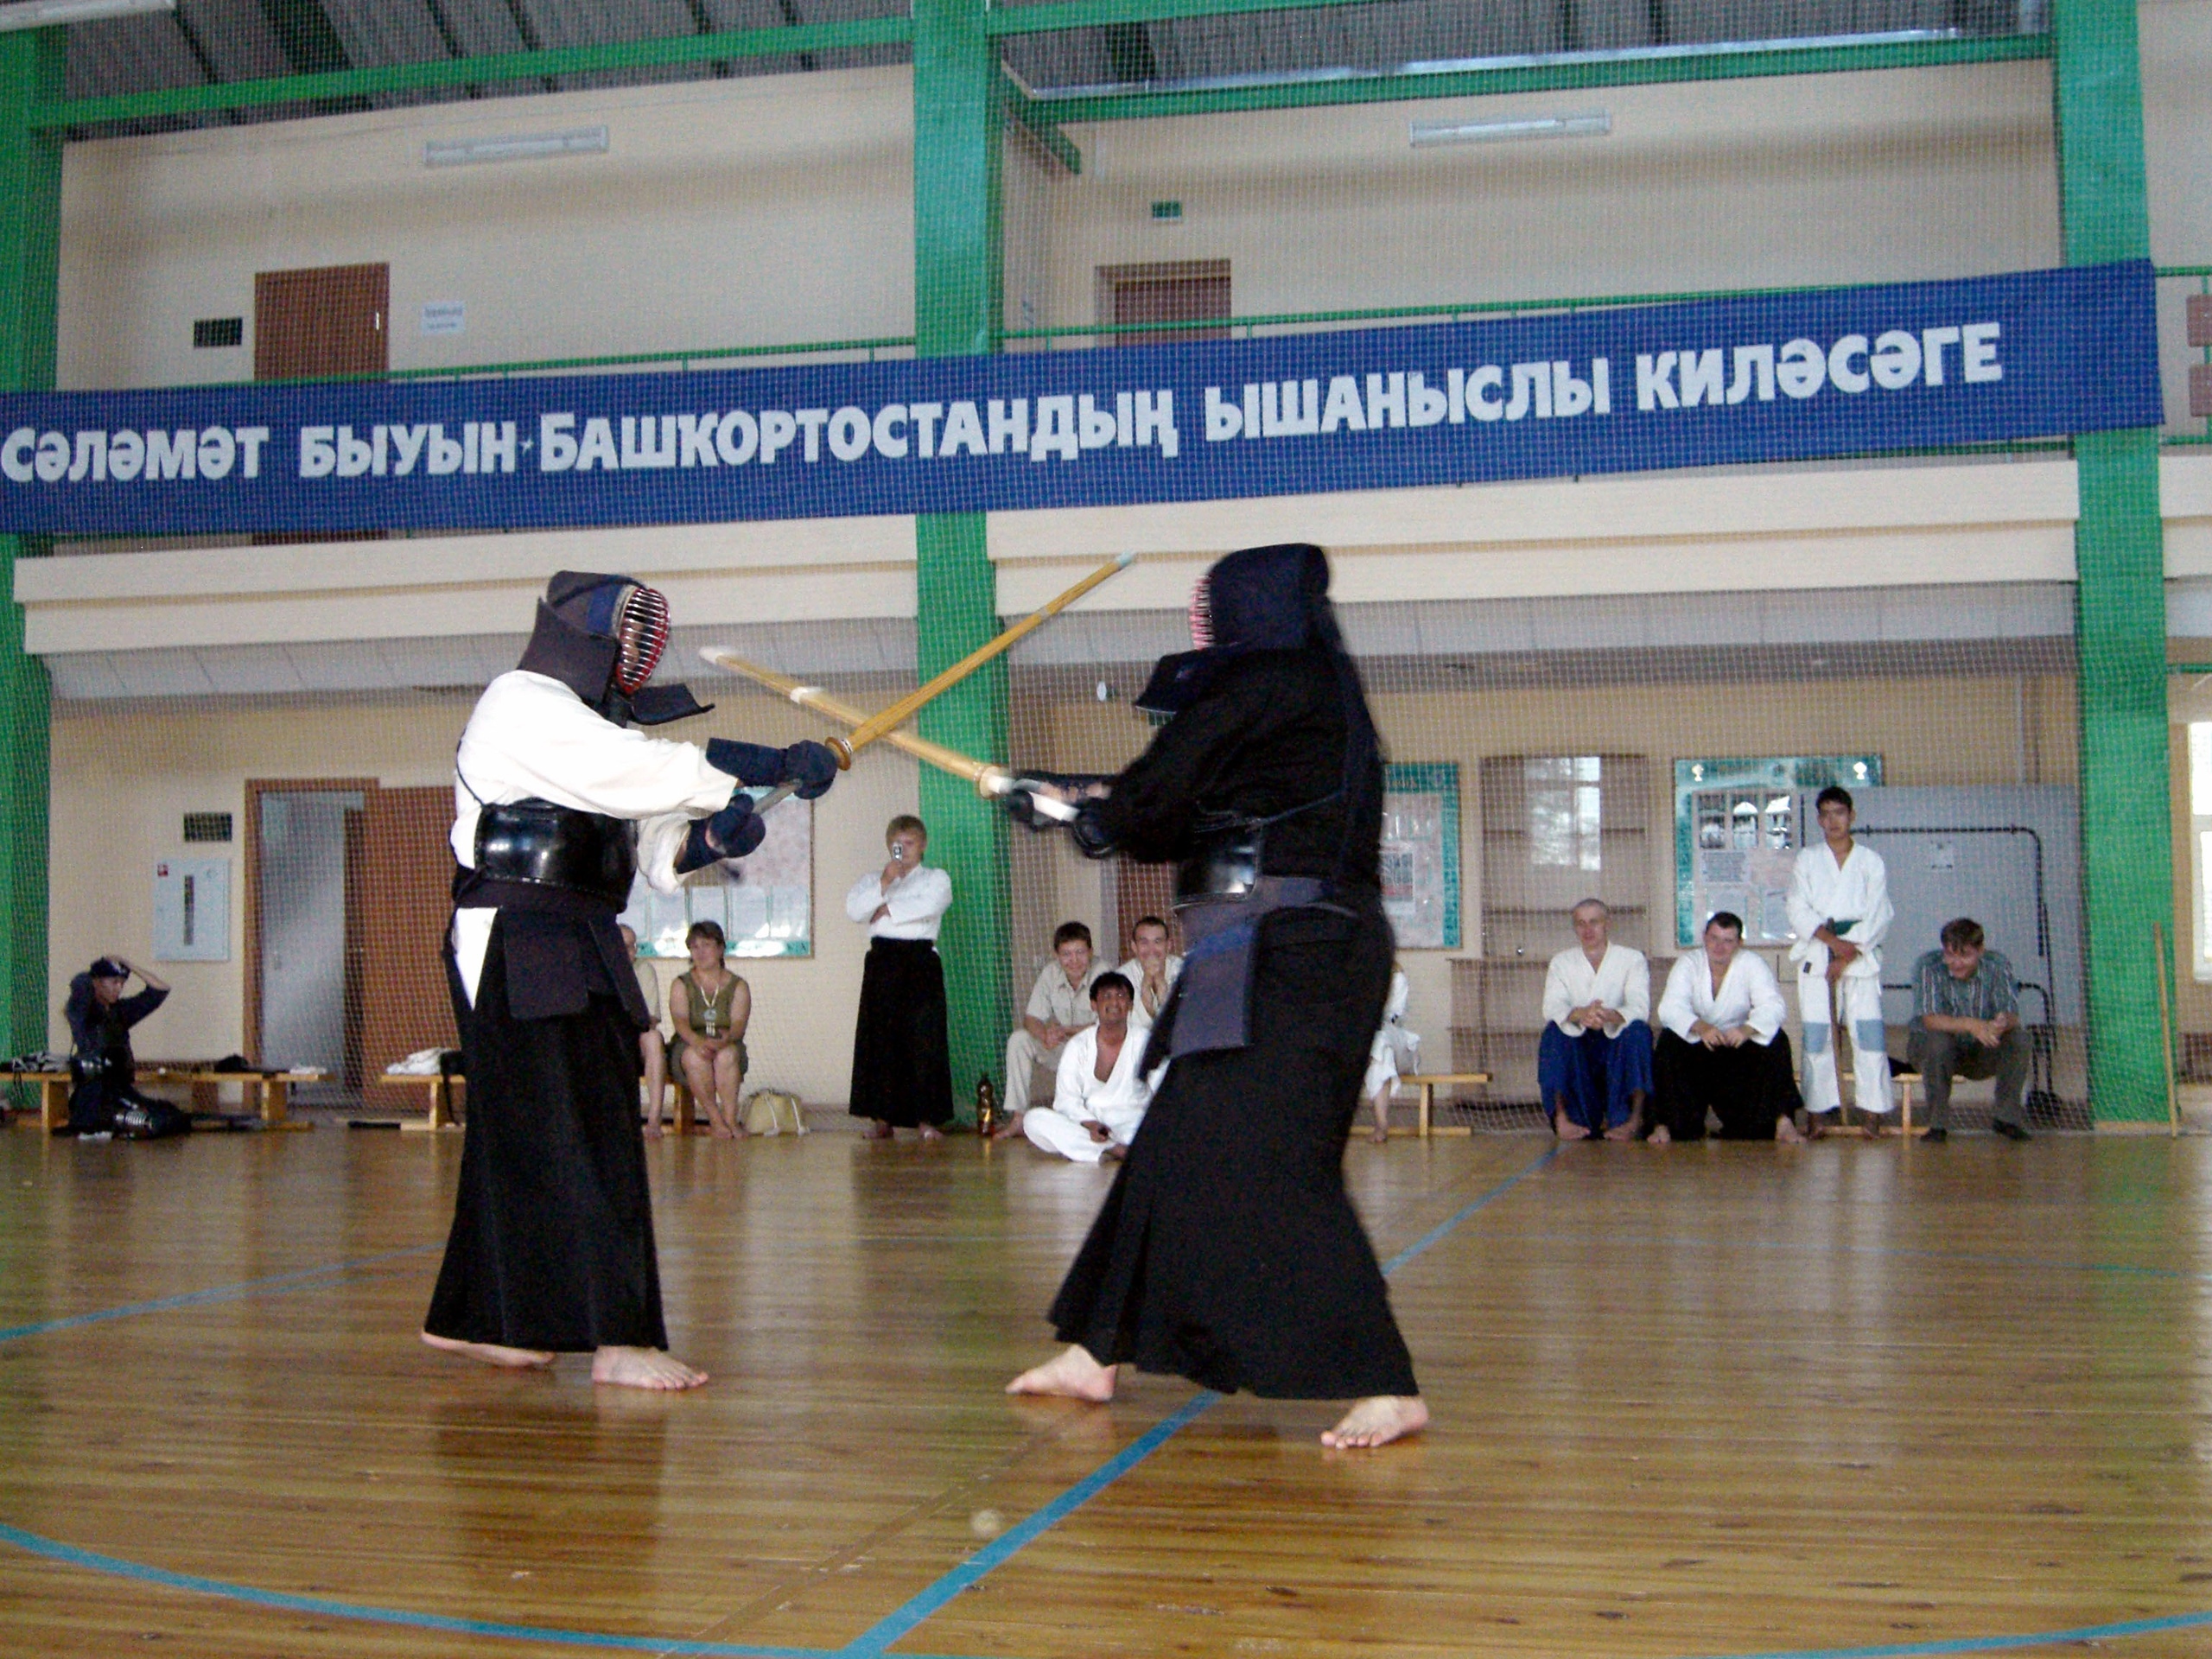 Фото с соревнований по кэндо из архива Юлии Аскаровой